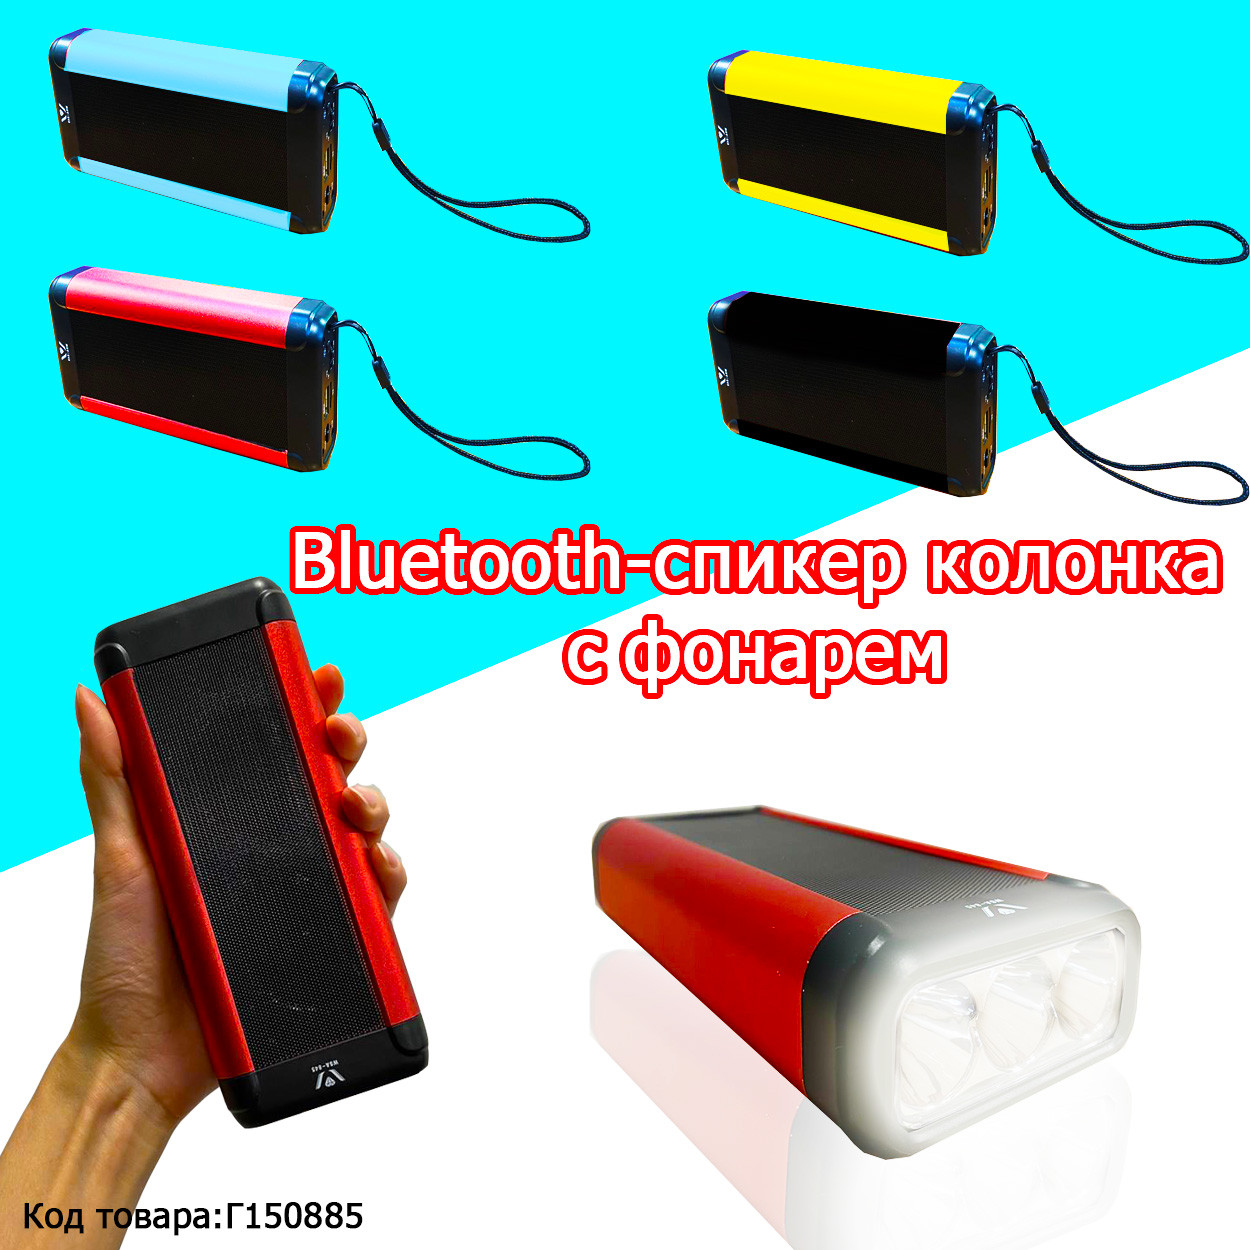 Колонка беспроводная стерео bluetooth-спикер для смартфонов с фонарем Wireless Speaker WSA-845 в ассортименте